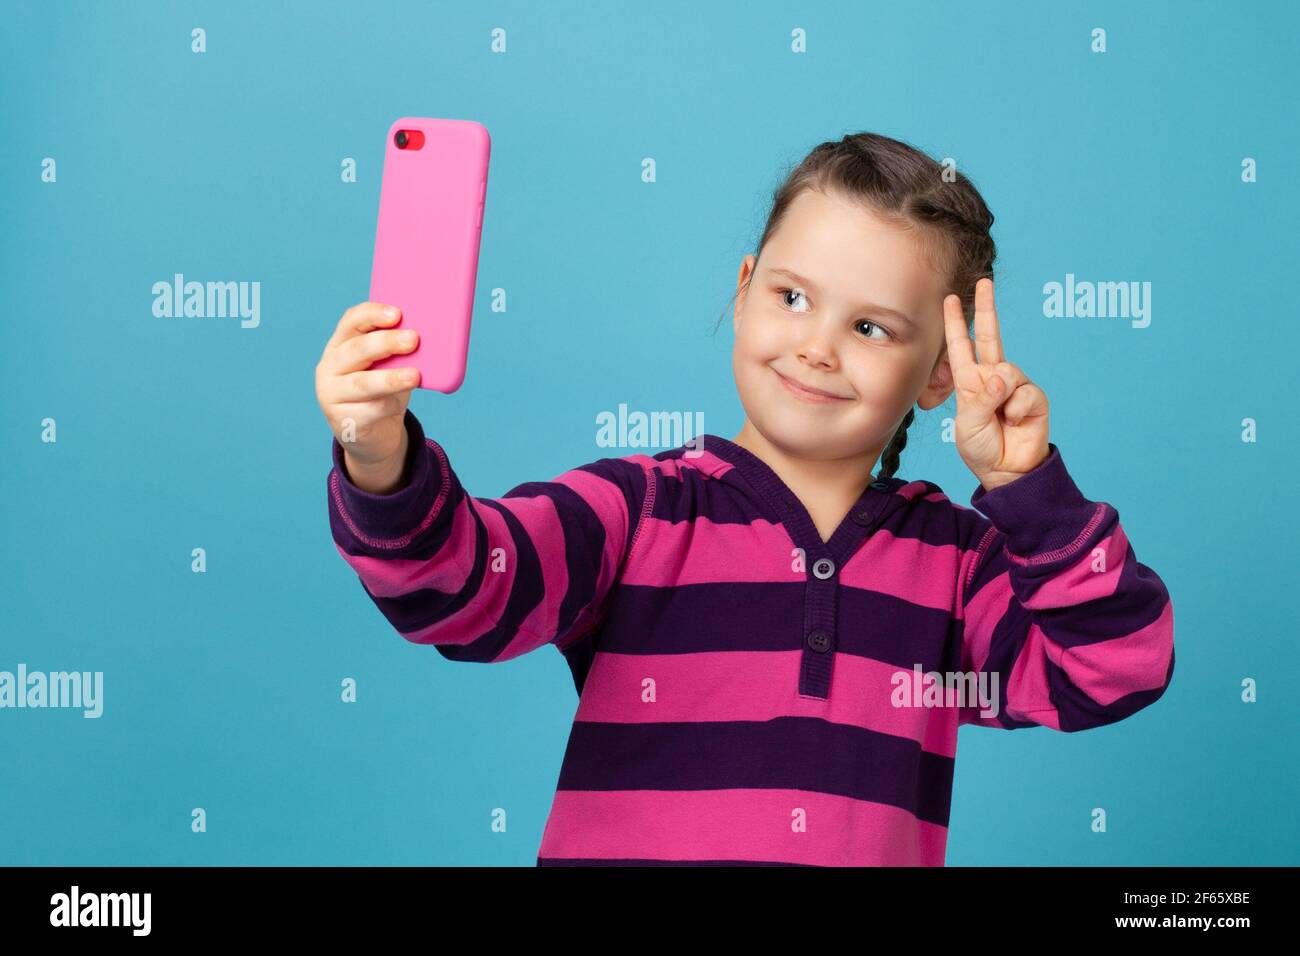 Porträt des Kindes Mädchen lächelnd und Selfie, Telefonanruf auf rosa Telefon und zeigt Siegeszeichen mit Fingern, isoliert auf einem blauen Hintergrund Stockfoto